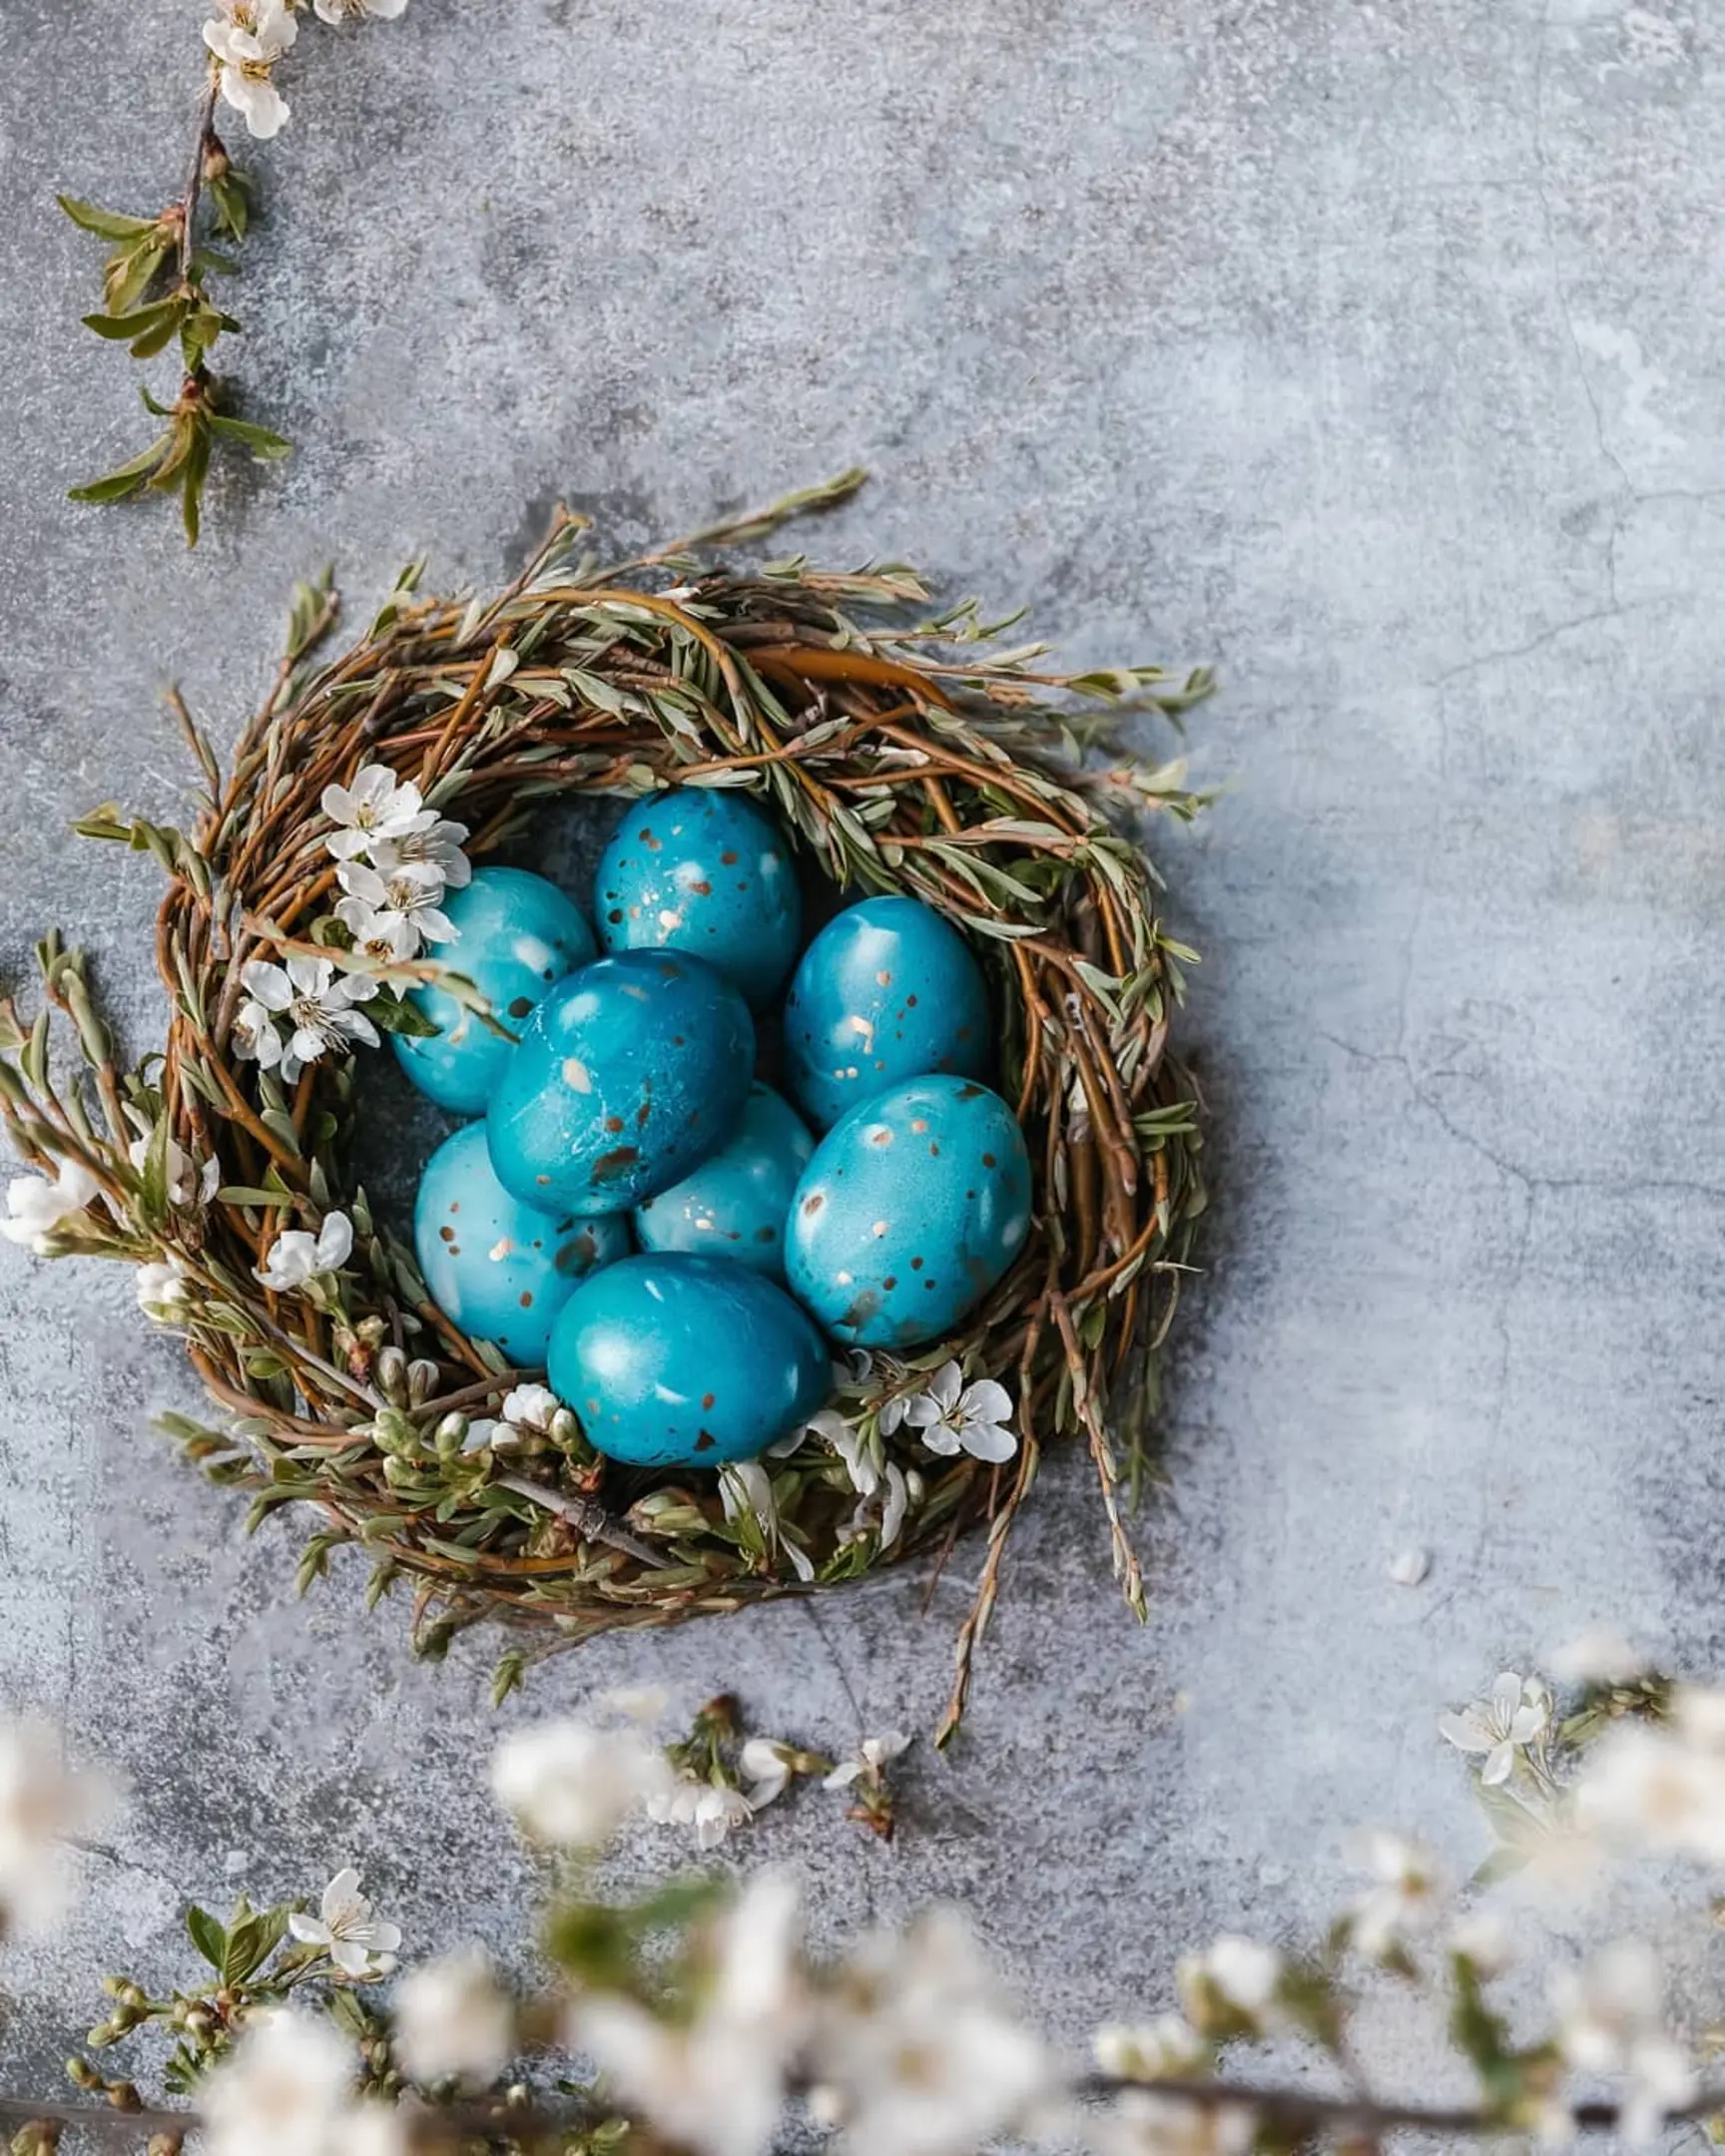 Яйца със сини петна лежат в гнездо с цветя. Яйца със сини петна лежат в гнездо с цветя. На преден план се виждат клони с цветя. Гнездото е върху сиво-син бетонен фон.